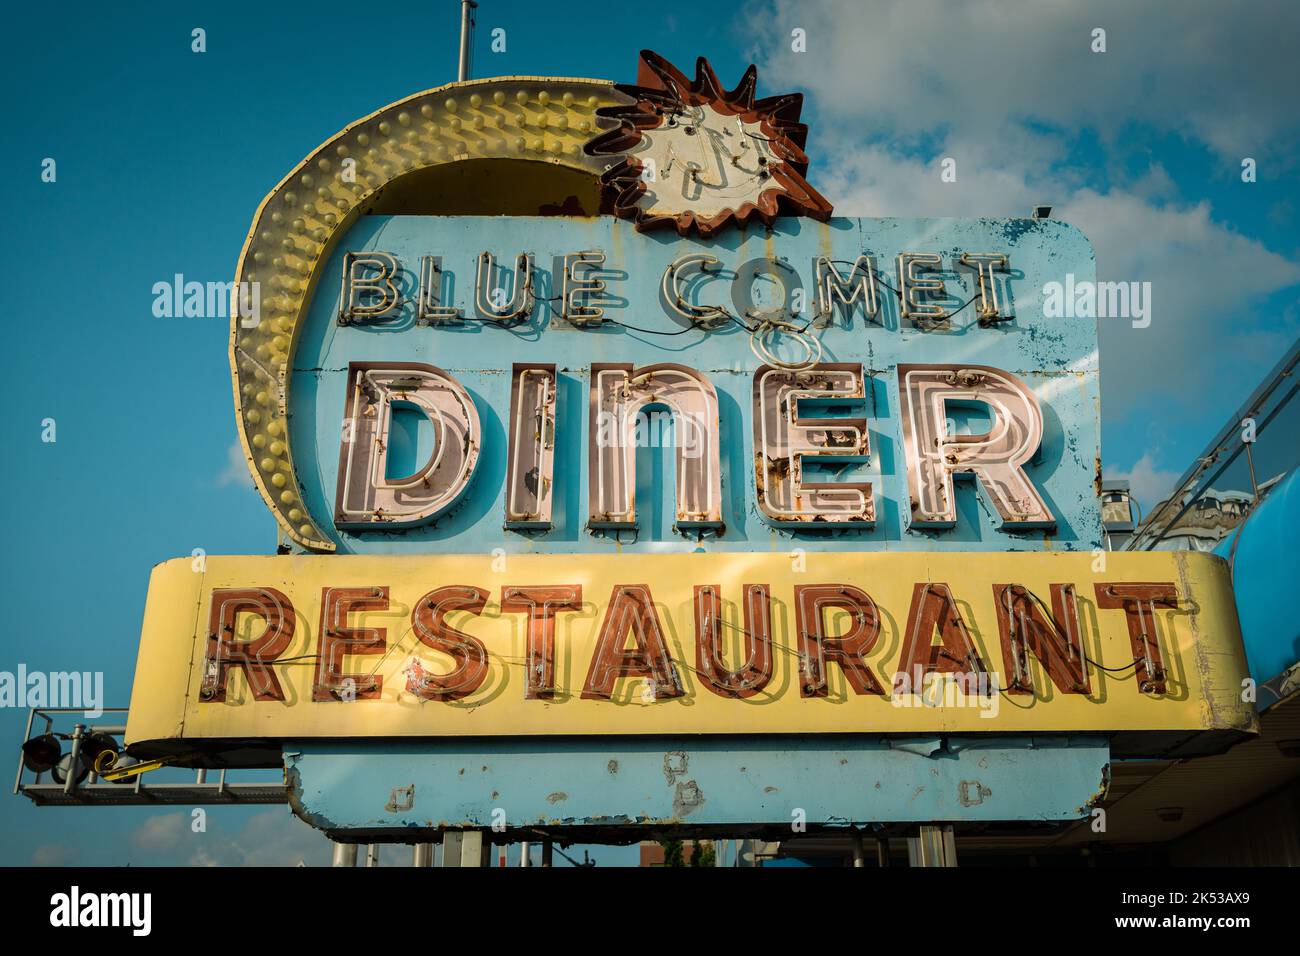 Blue Comet Diner panneau vintage, Hazleton, Pennsylvanie Banque D'Images